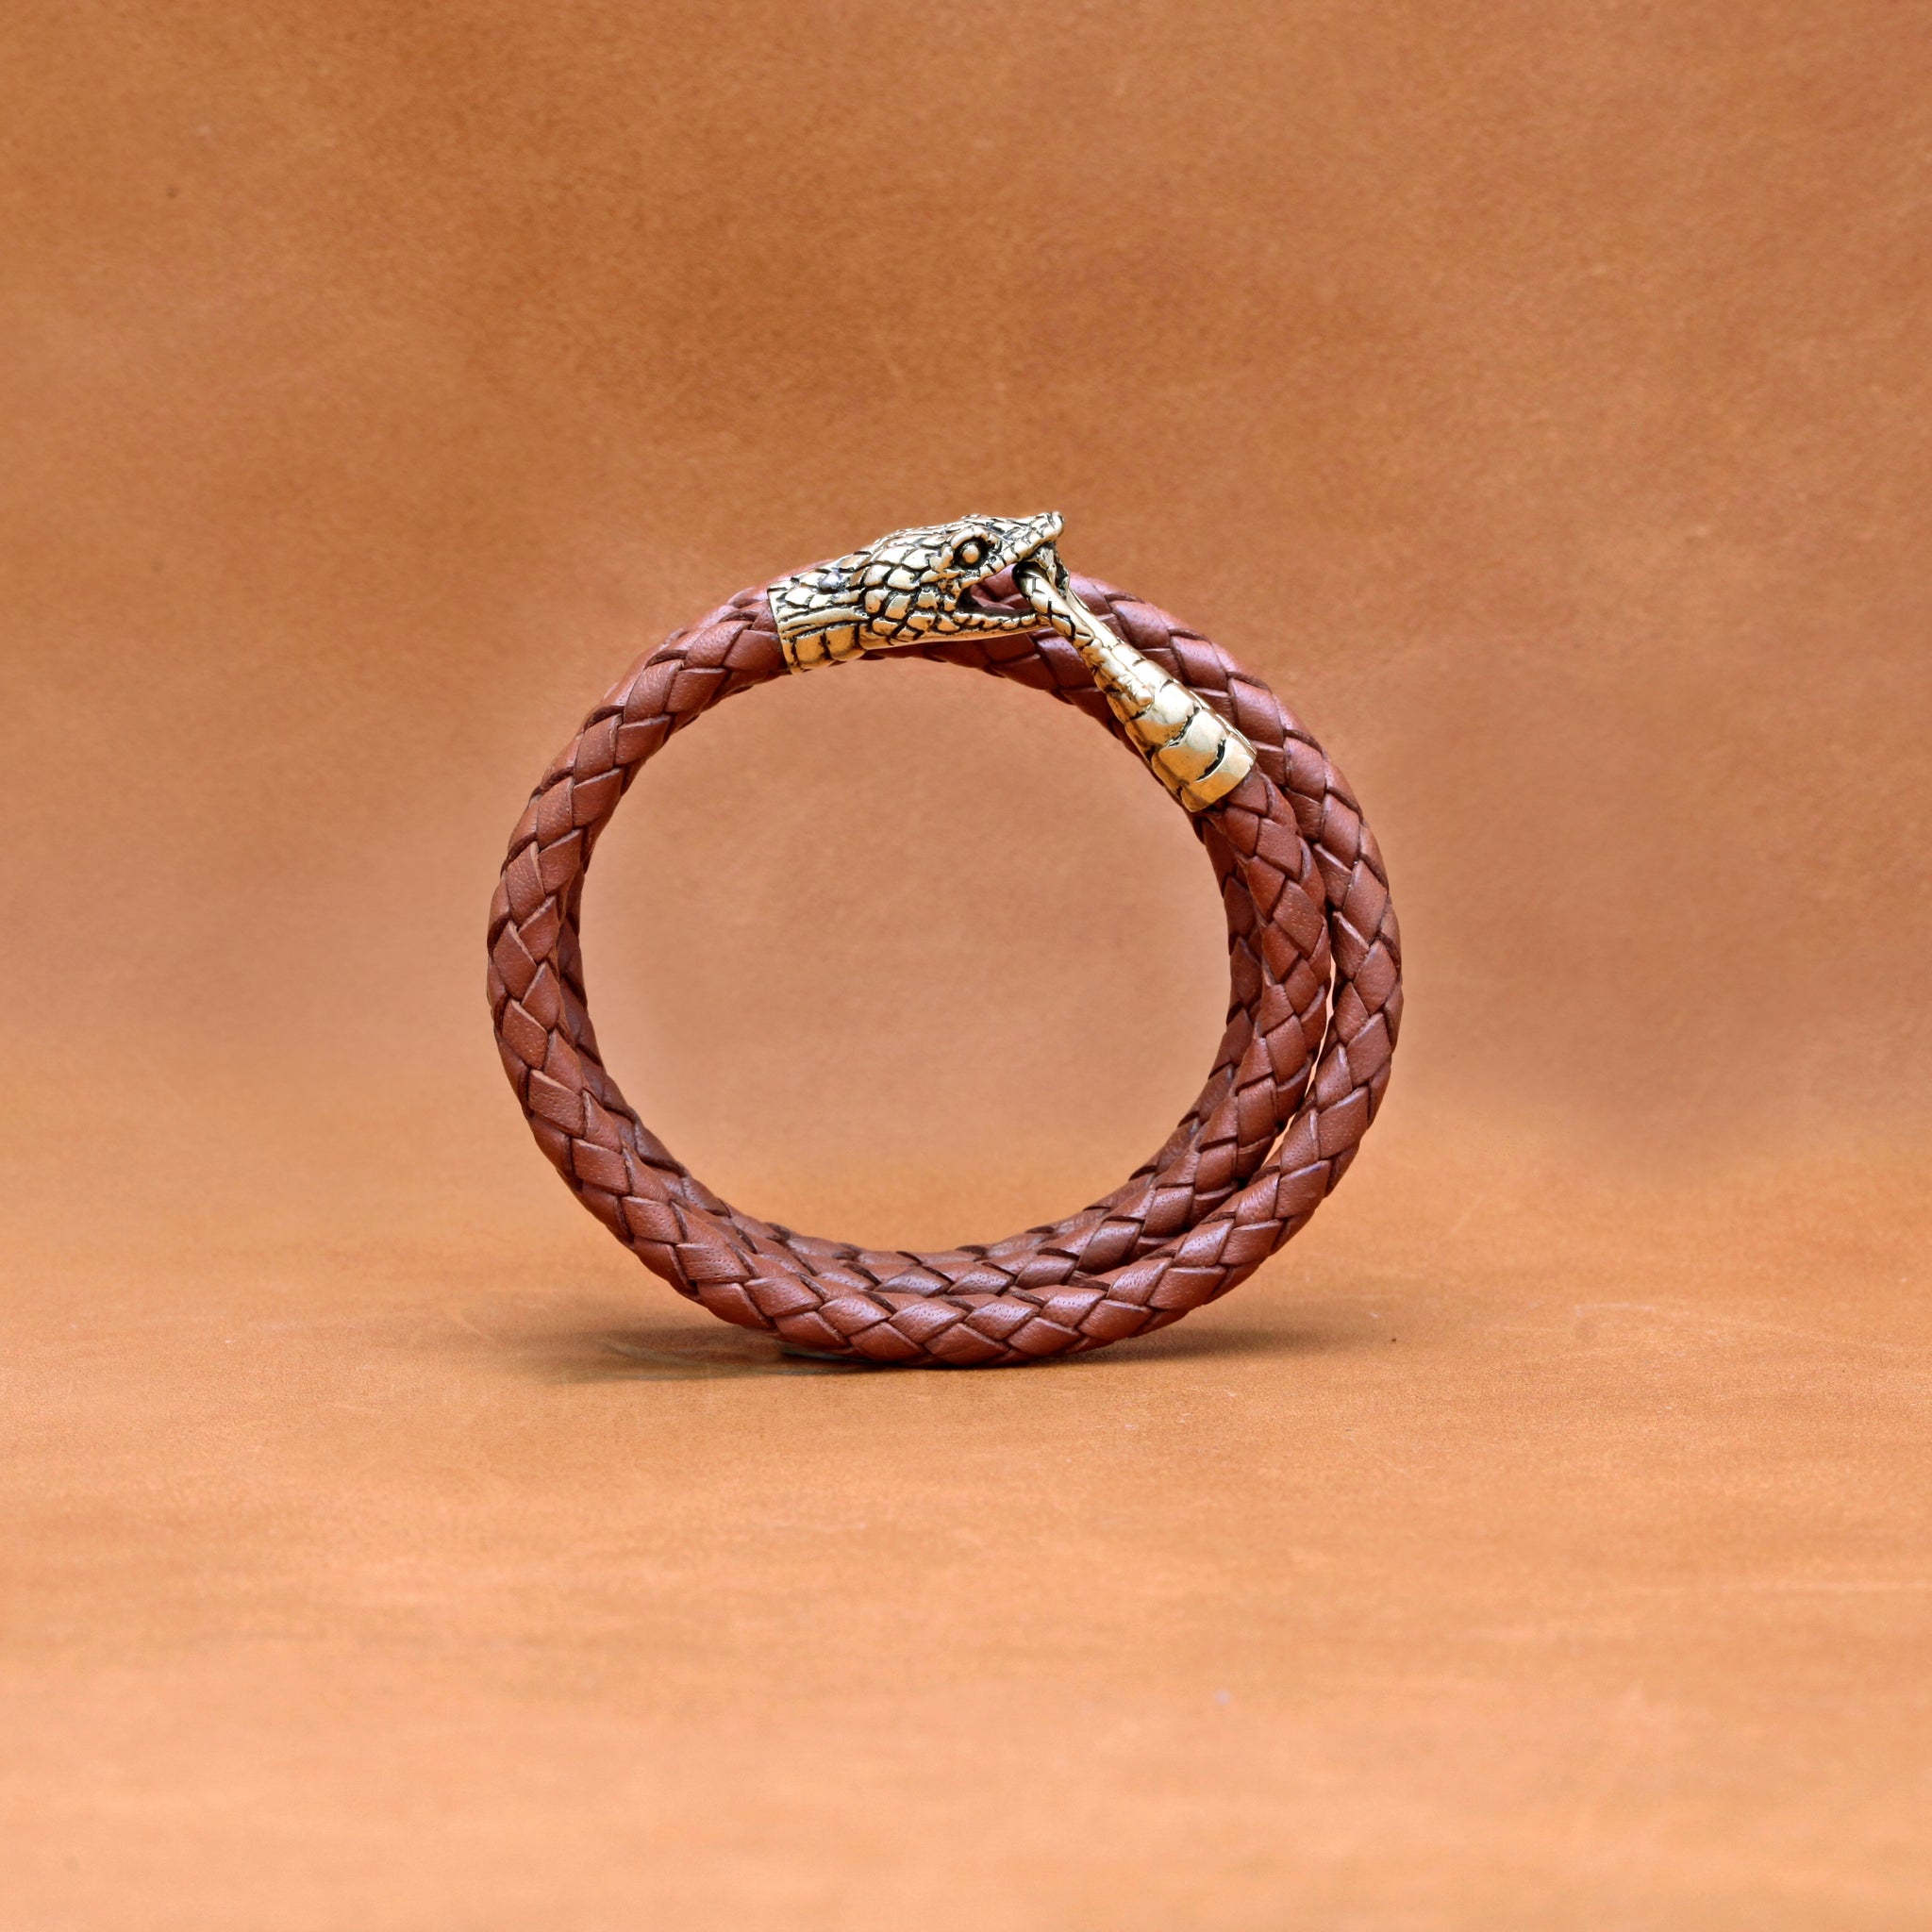 Shop For Best Copper Bracelet From Widest Range Online